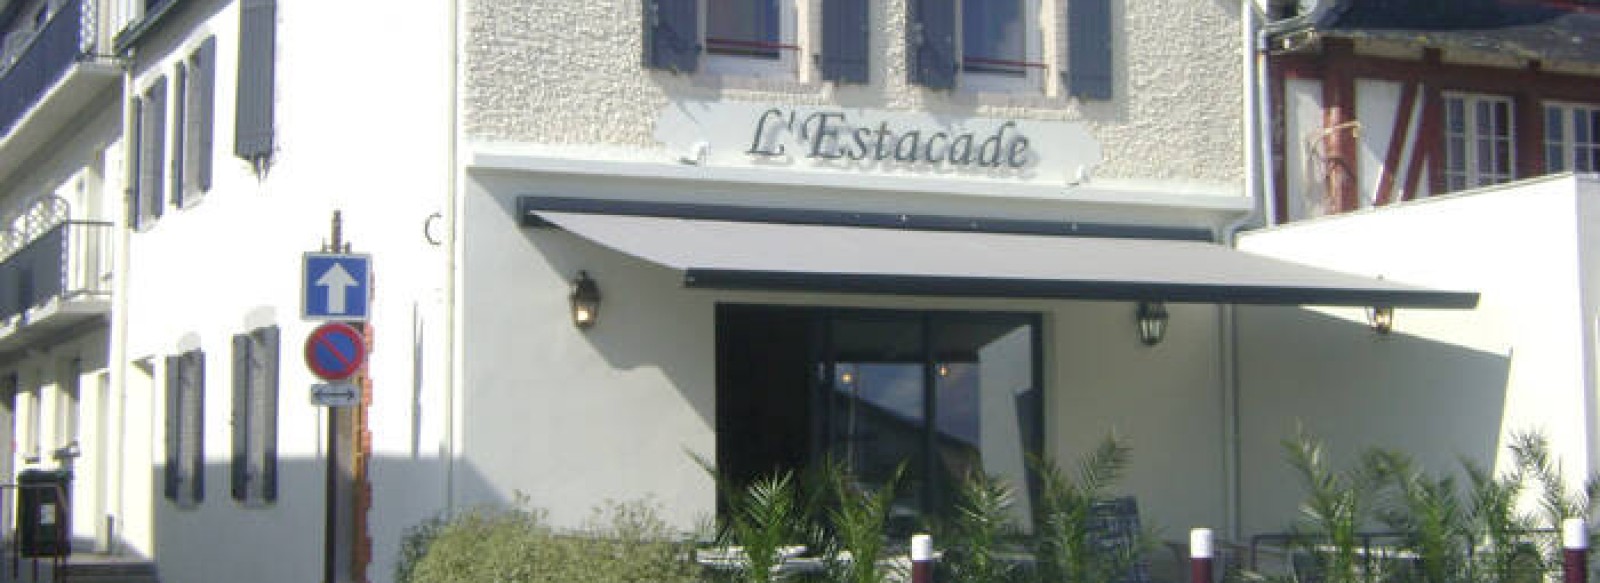 Hotel - L'Estacade